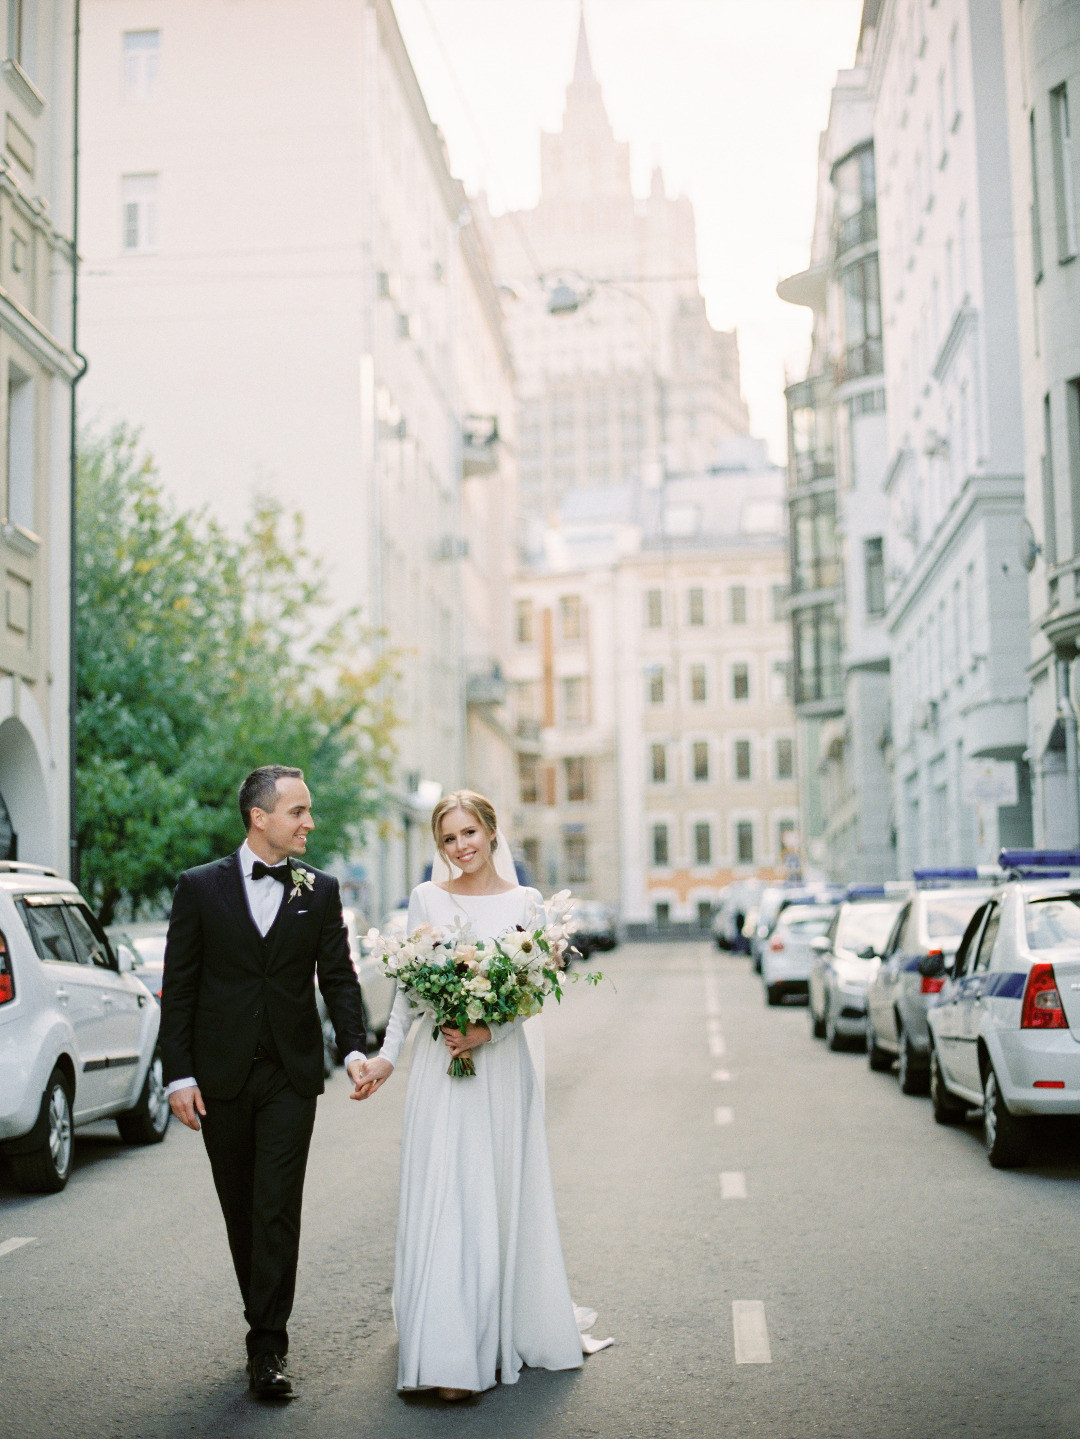 Simple Elegance: свадьба в белой палитре